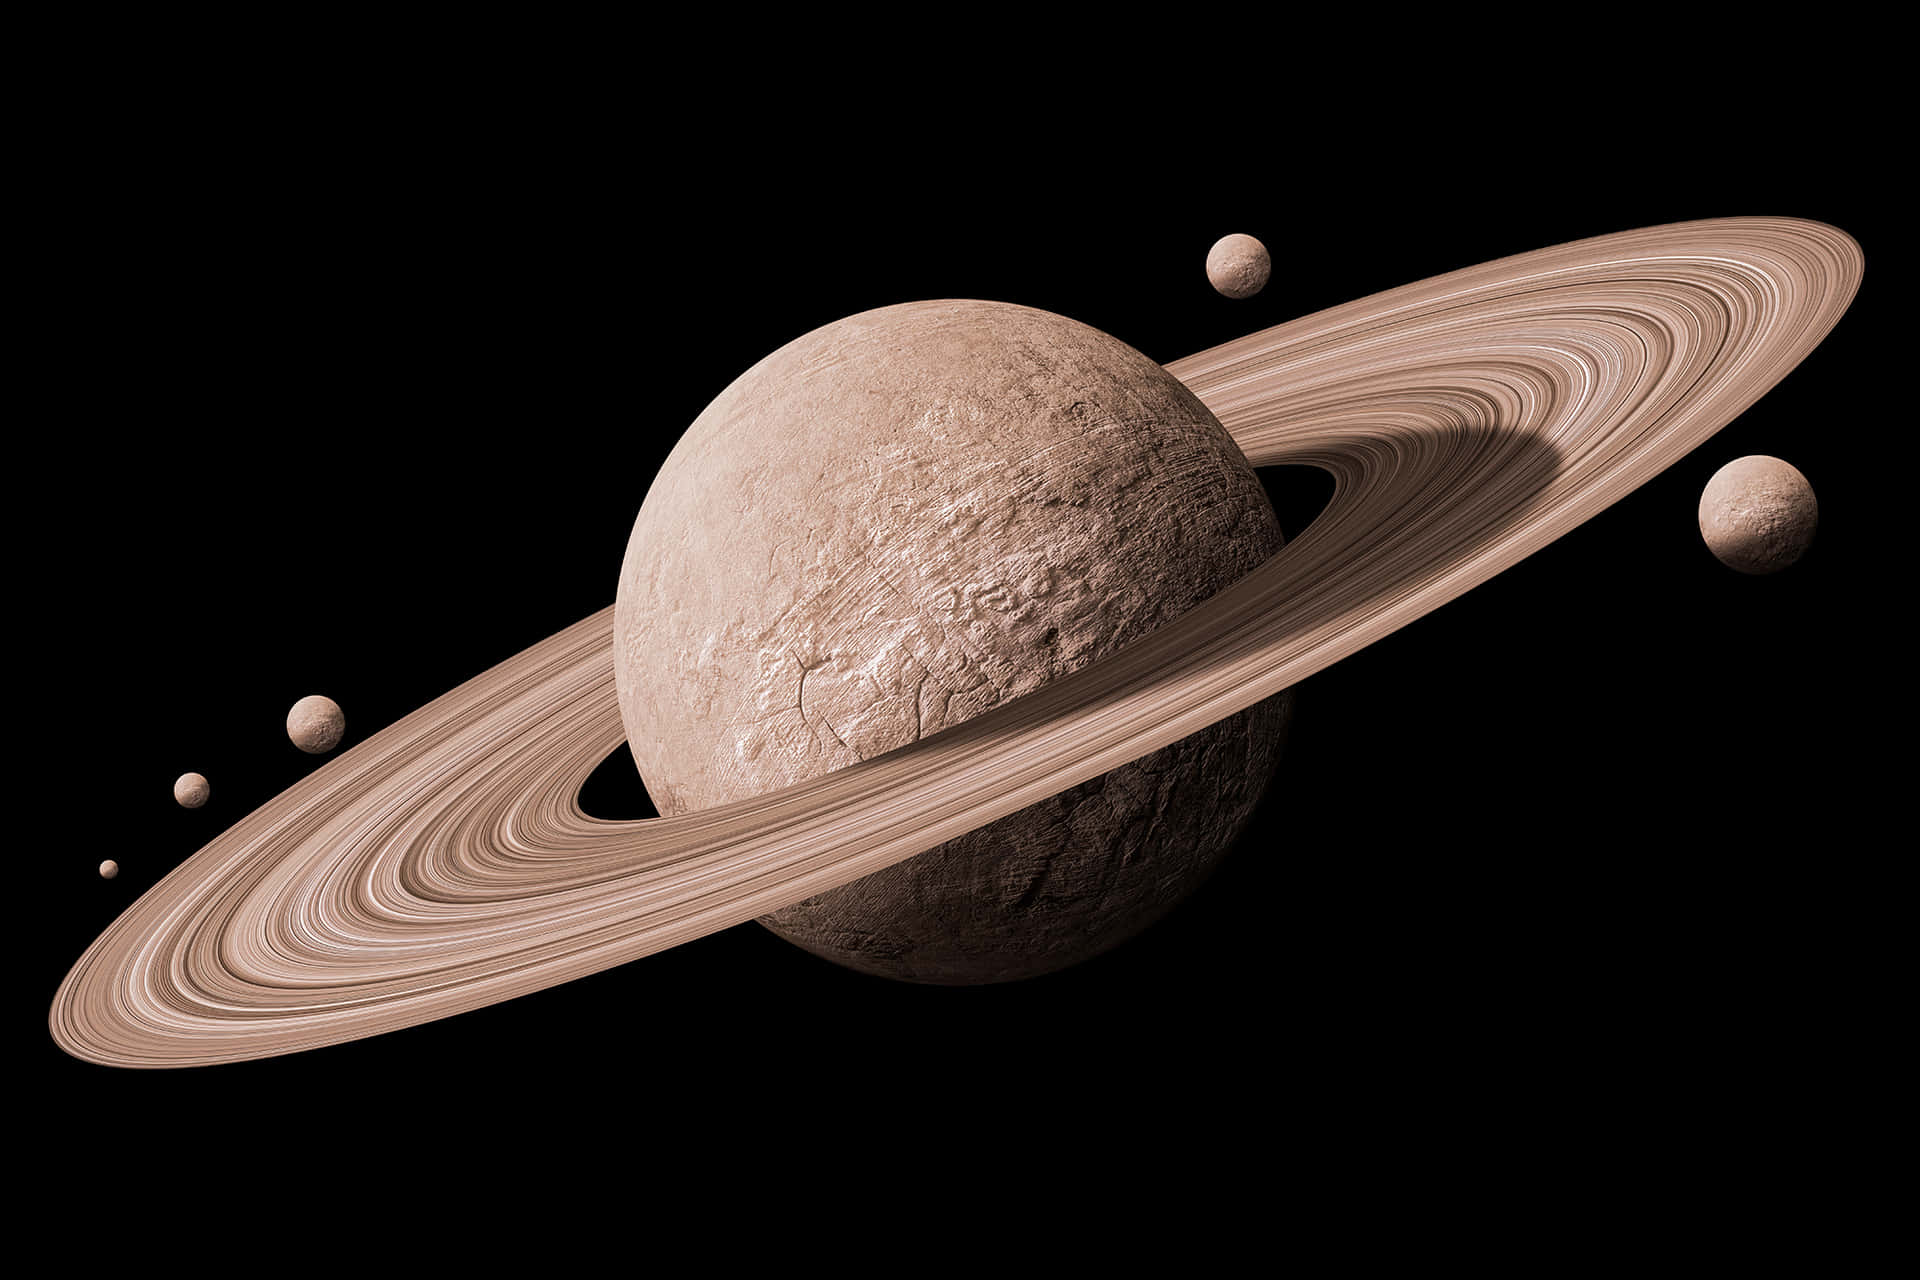 Saturn's beautiful rings from afar